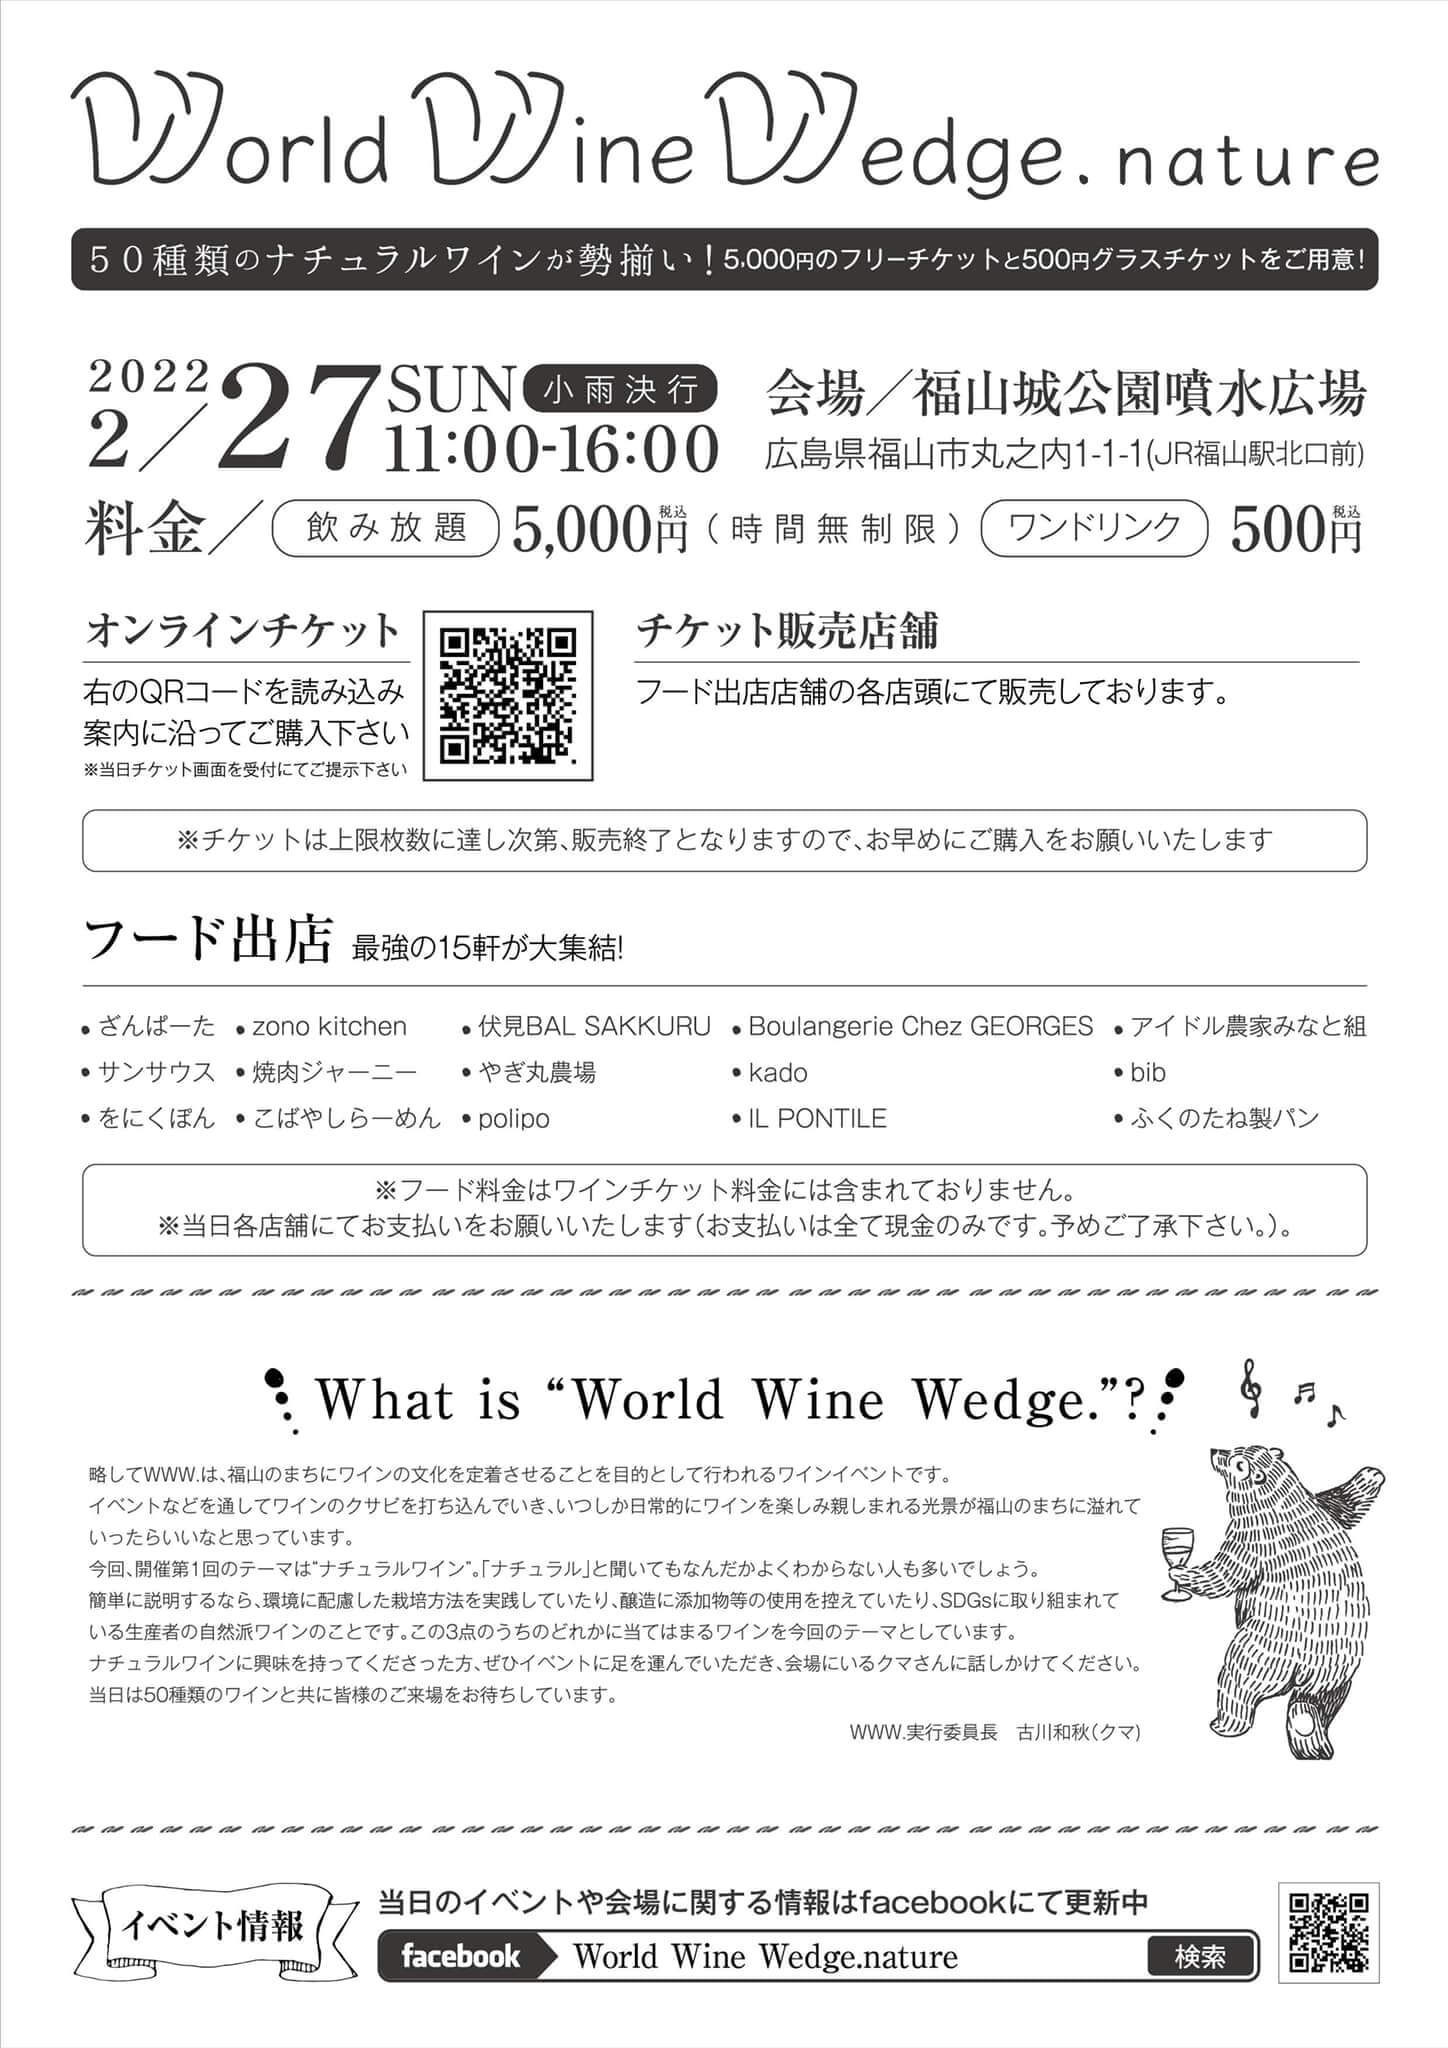 World Wine Wedge nature イベントの詳細情報